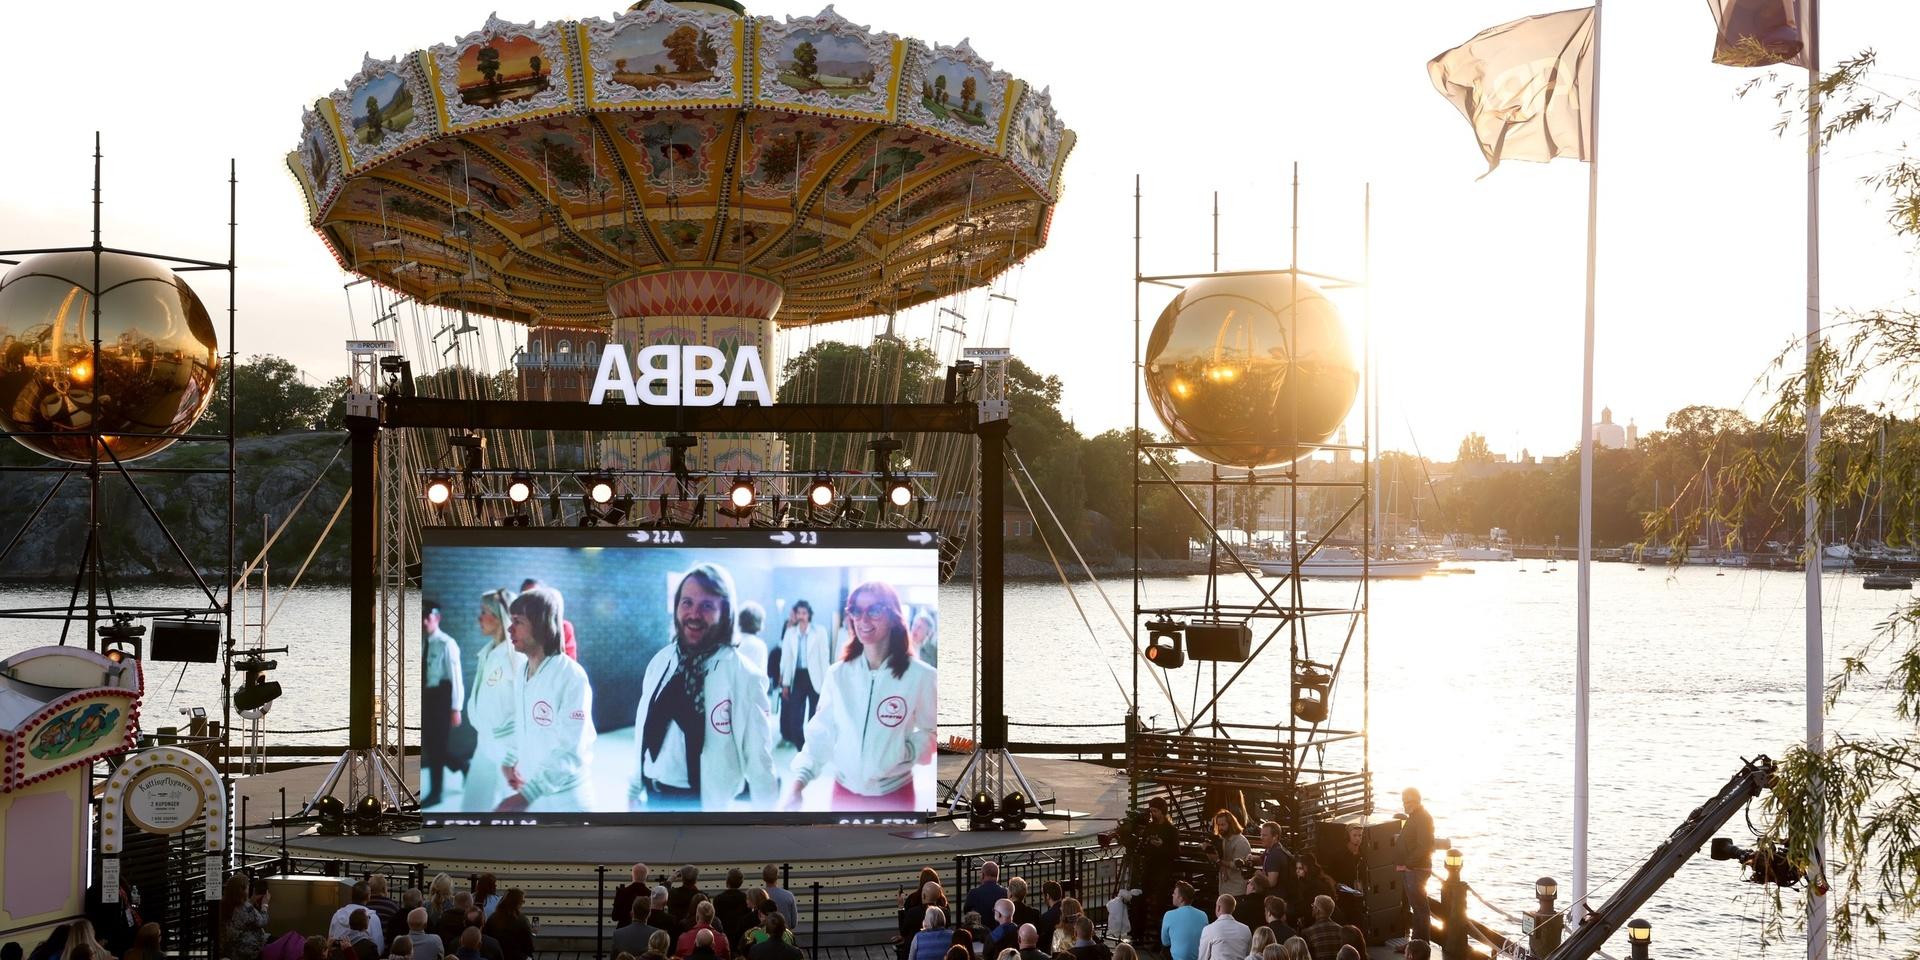 Abba avslöjar att de släpper ett nytt album under ett direktsänt evenemang på Gröna Lund i Stockholm.